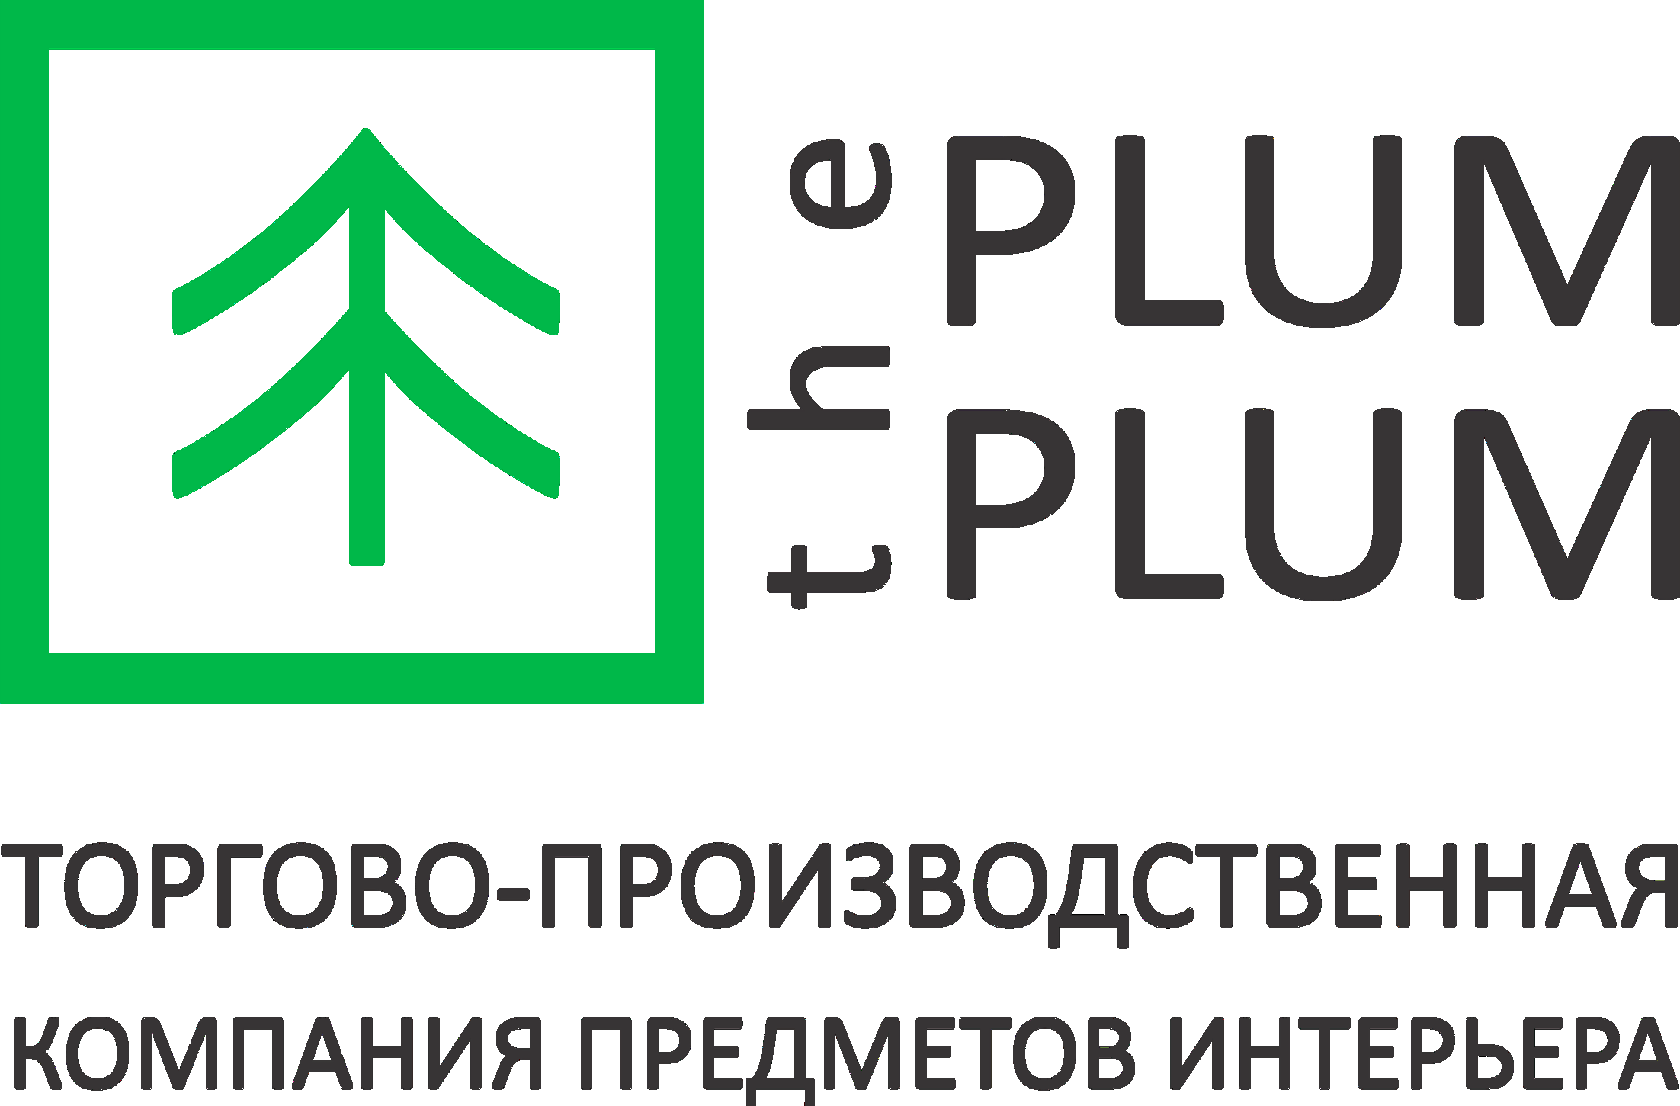 The Plum Plum